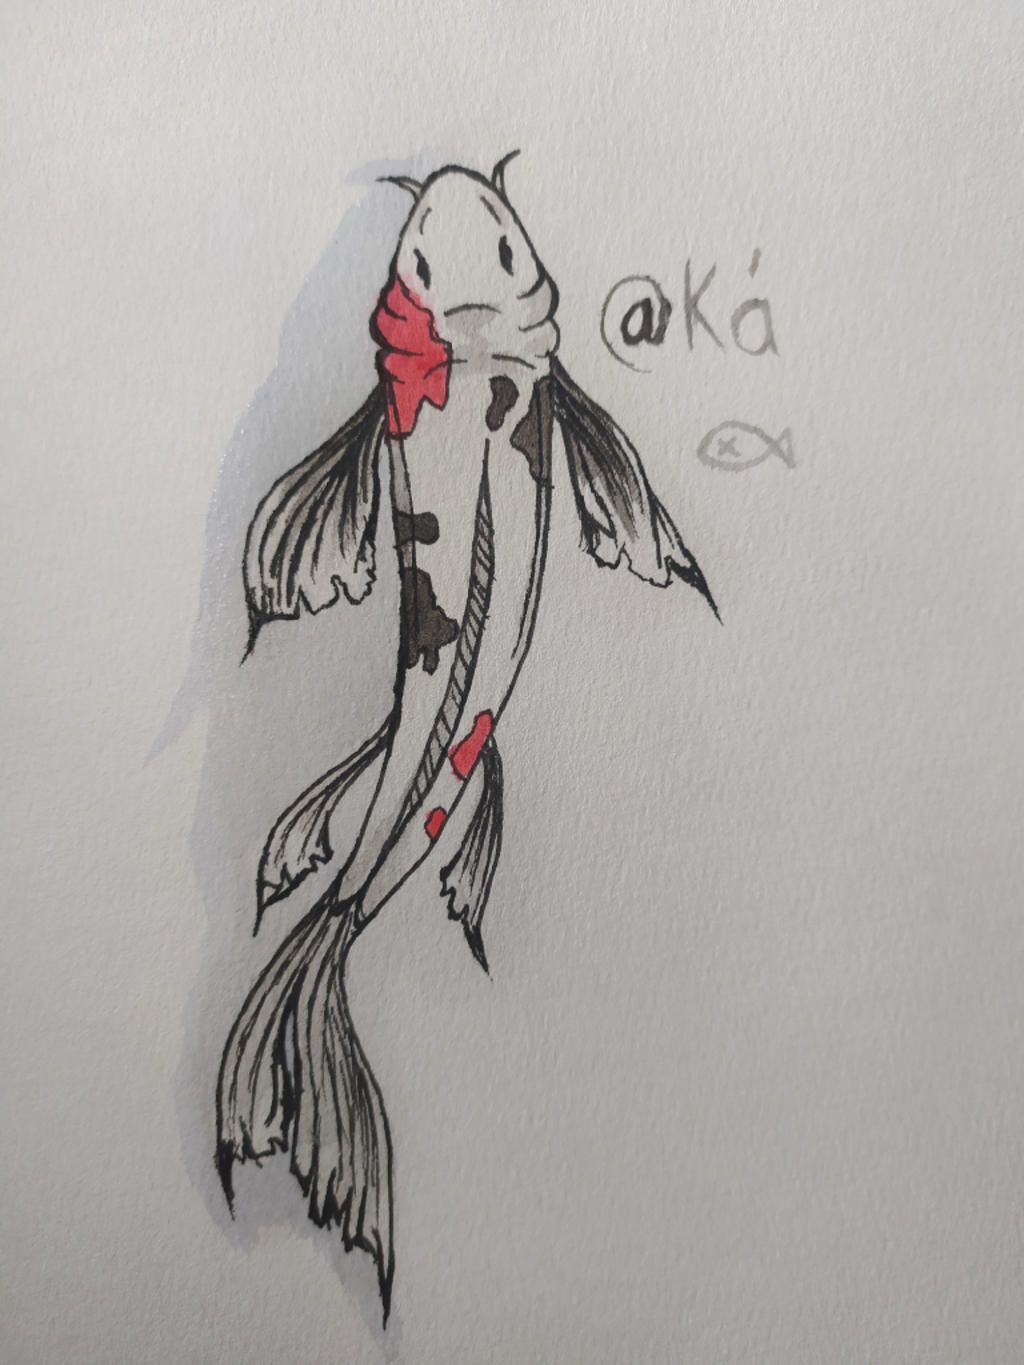 Vẽ con vật em yêu thích :) câu hỏi 1009004 - hoidap247.com: vẽ con cá trê. Hãy thể hiện tình yêu dành cho con cá trê bằng cách vẽ và tô màu nó thành hình ảnh đẹp mắt. Nhờ các chuyên gia trên trang hoidap247.com, bạn có thể học được cách vẽ đơn giản và dễ hiểu, giúp bạn sáng tạo và thỏa mãn đam mê nghệ thuật. Hãy cùng khám phá và vẽ con cá trê thật ấn tượng nhé!